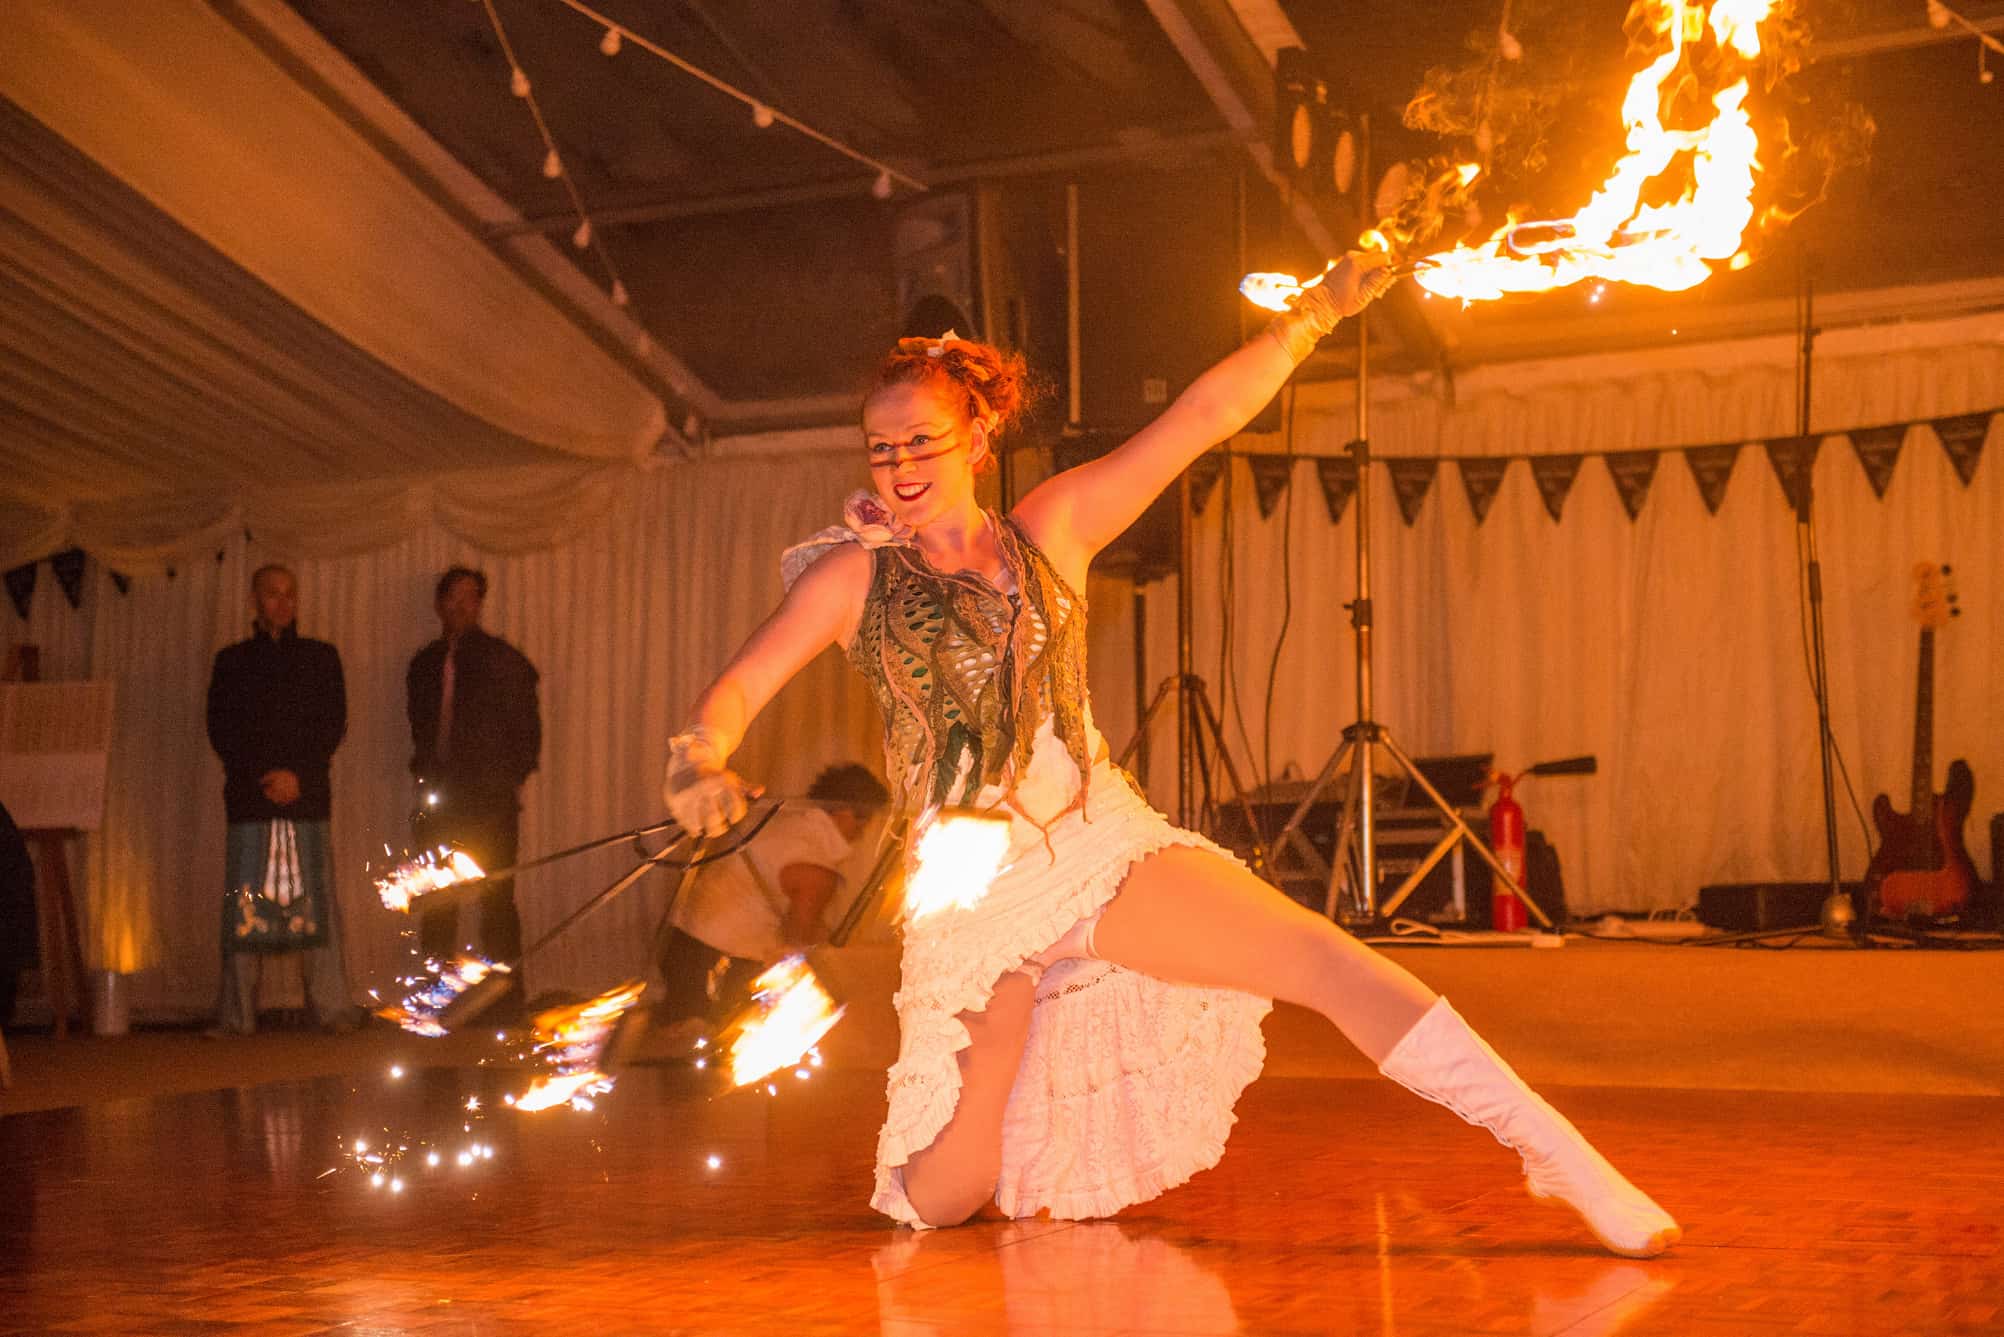 Fire dancer entertainment